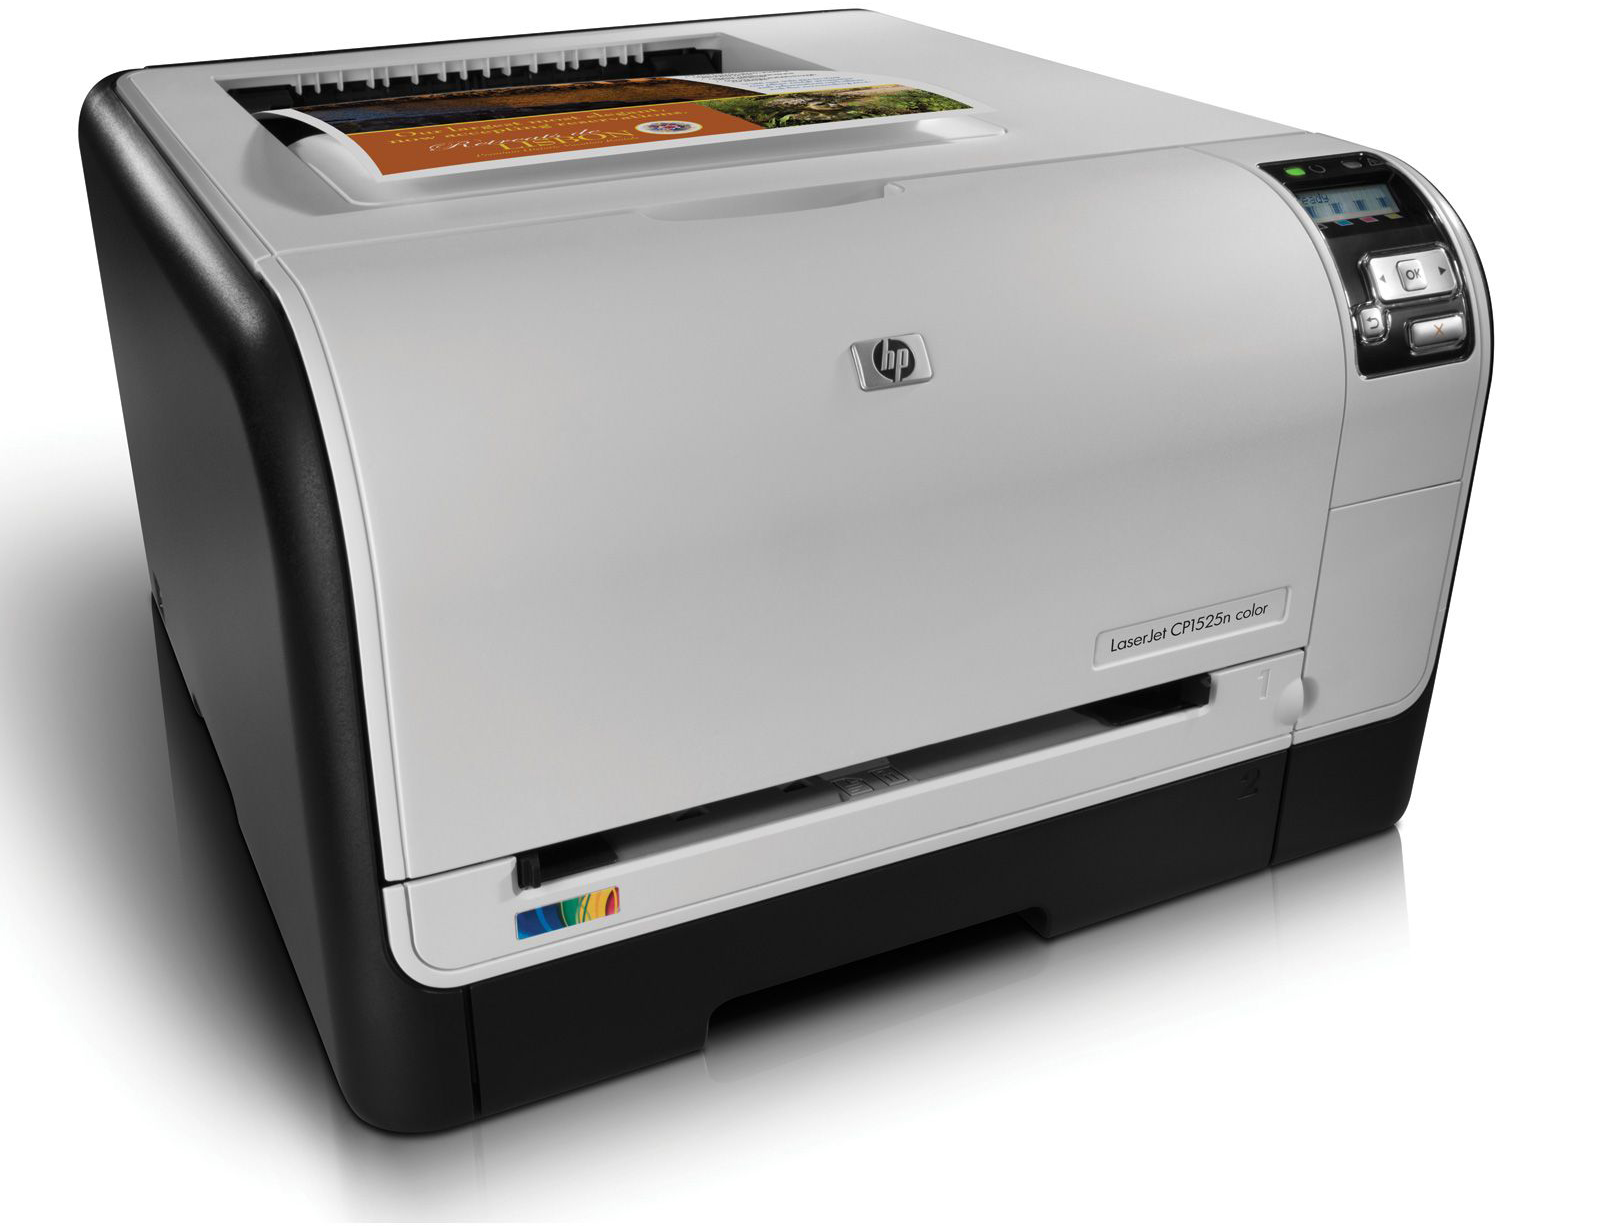 Download driver printer hp laserjet p1102w windows 10